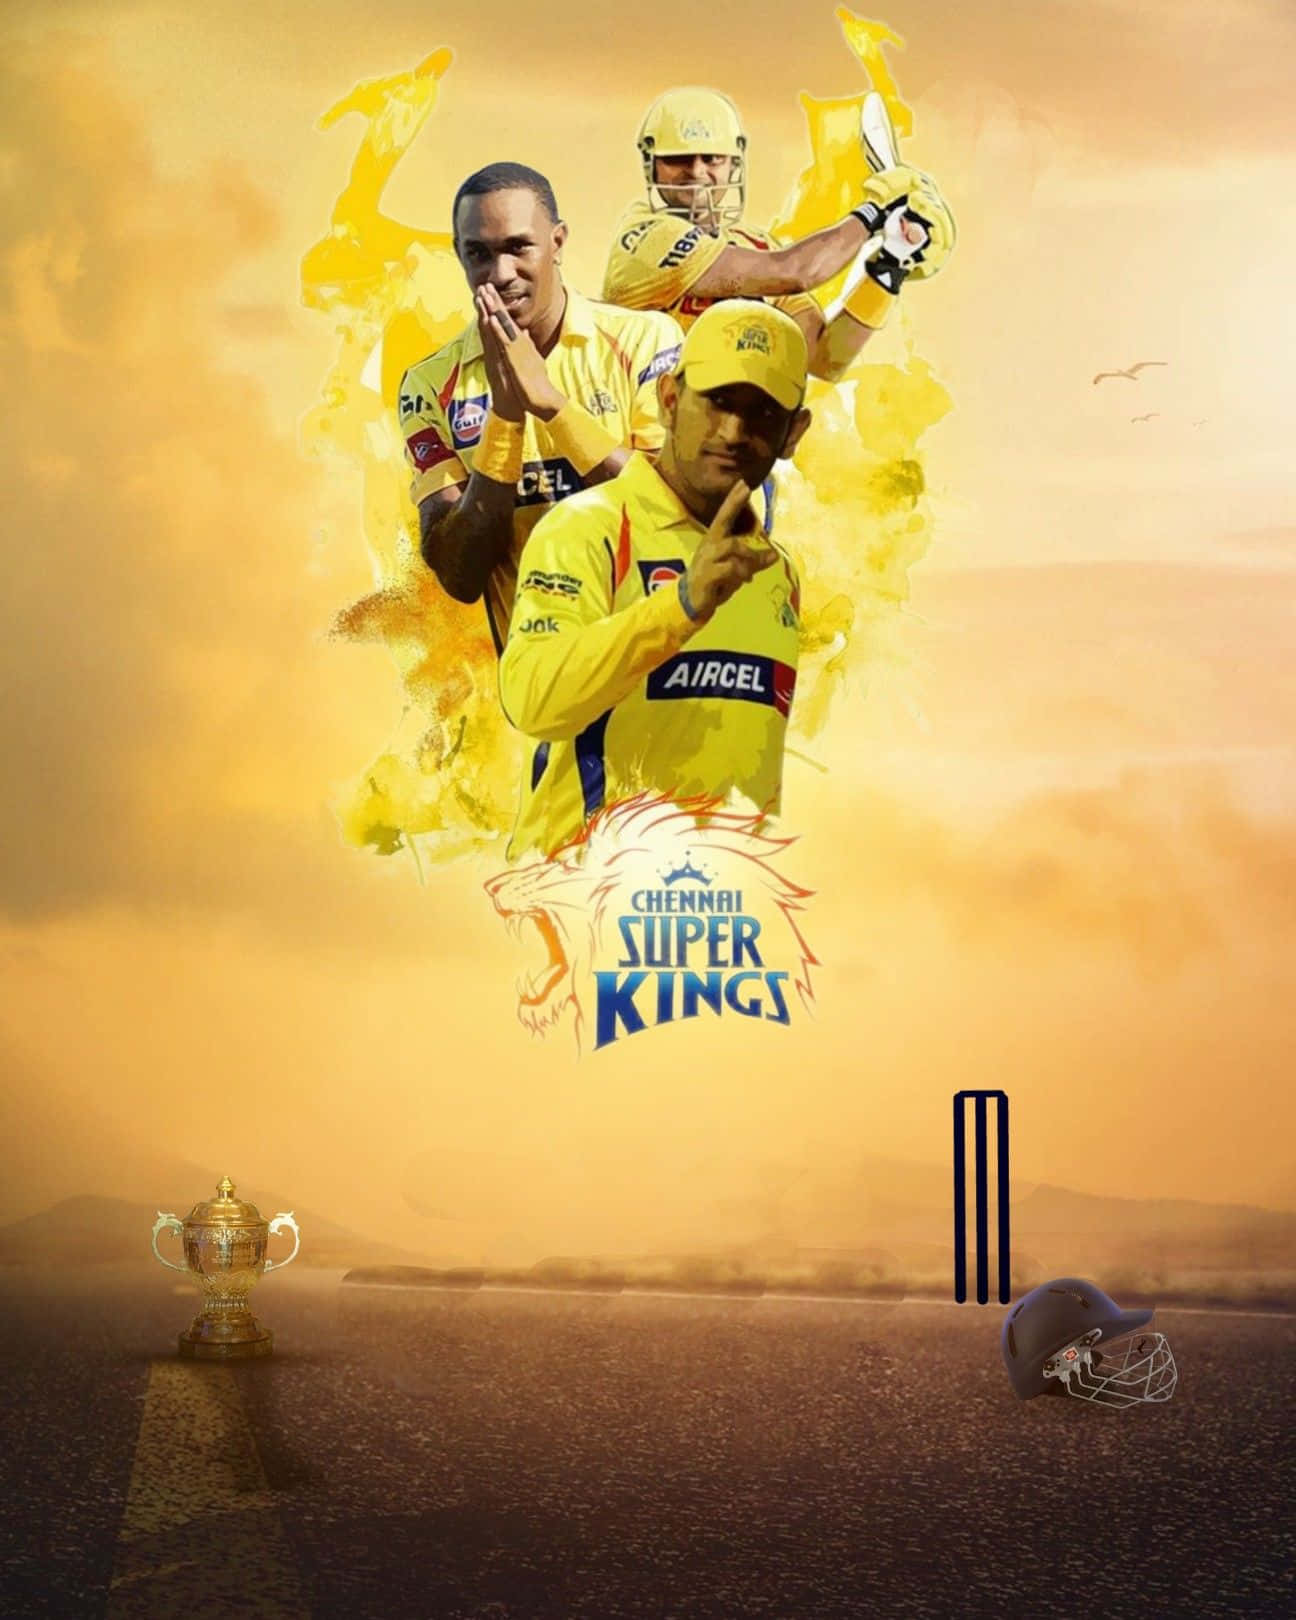 Chennaisuper Kings In Azione - L'orgoglio Dell'ipl